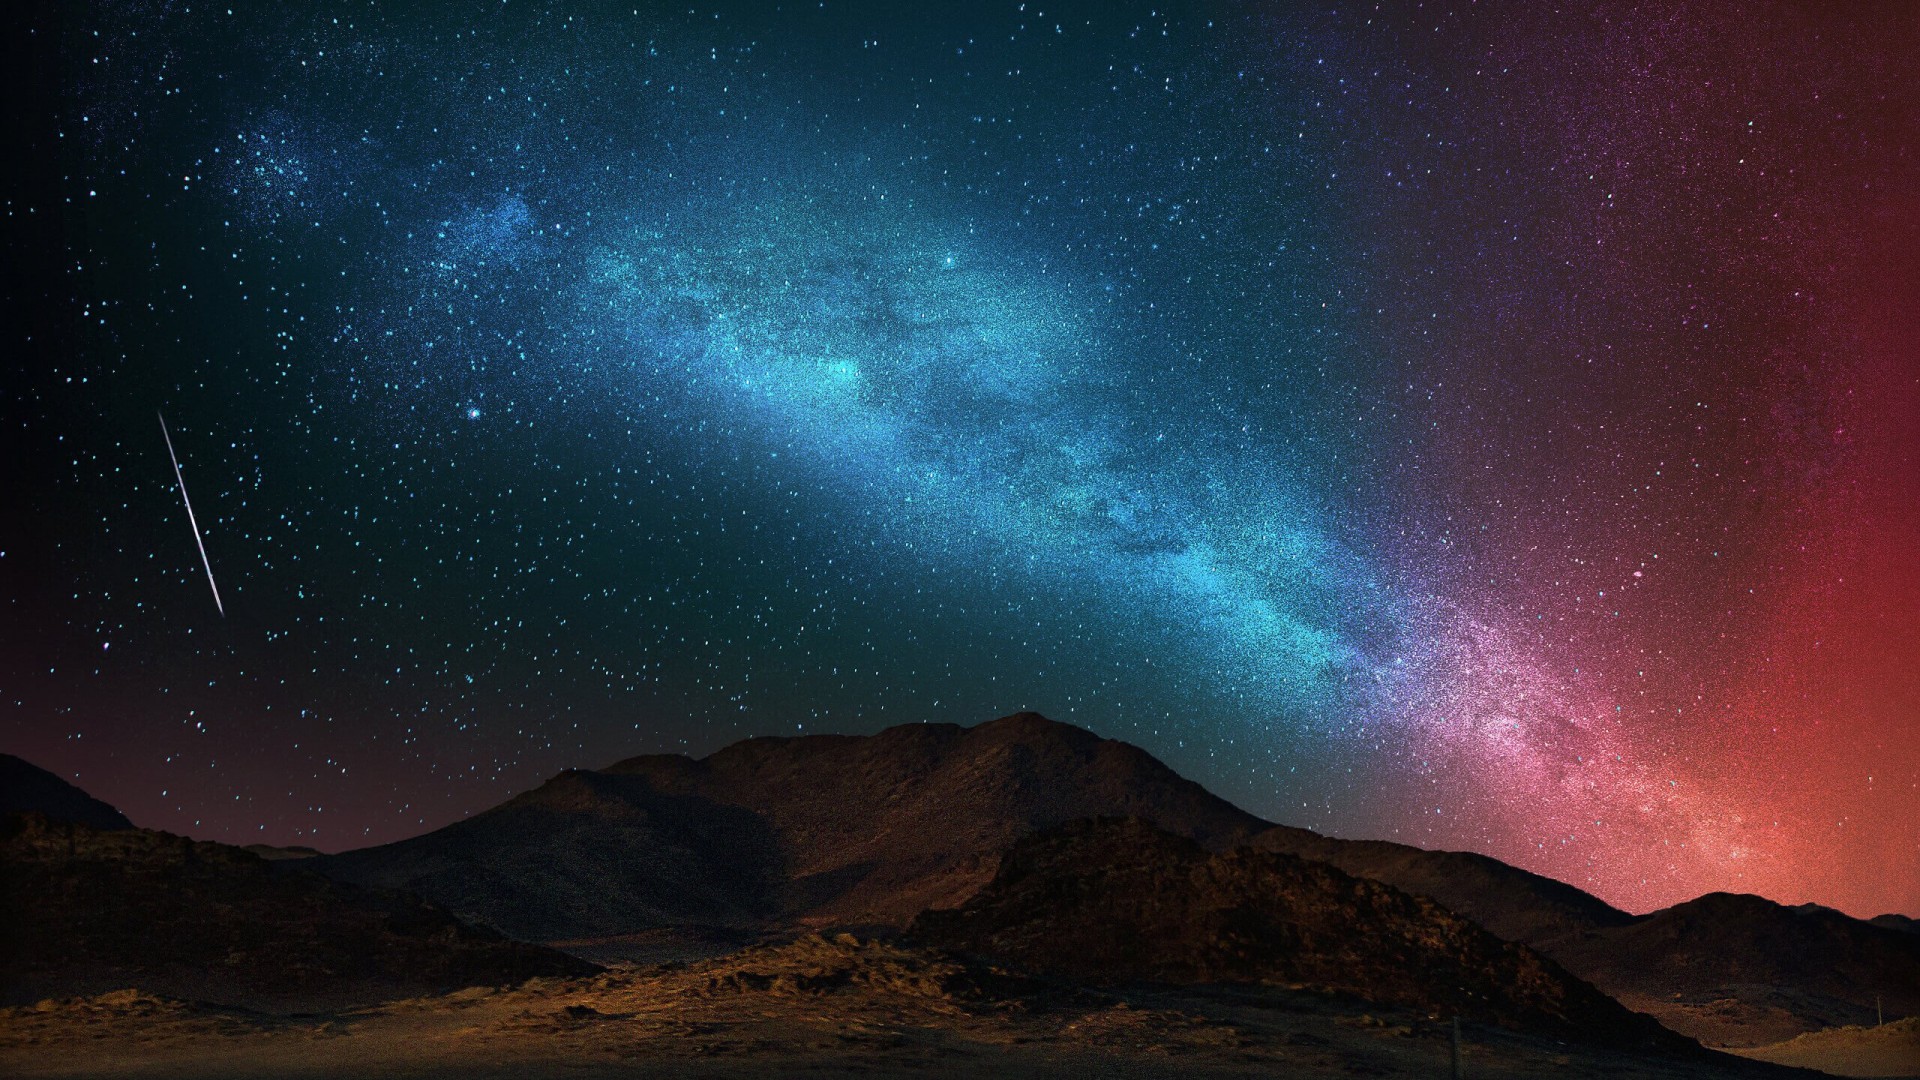 Starry Night Over The Desert Wallpaper for Desktop 1920x1080